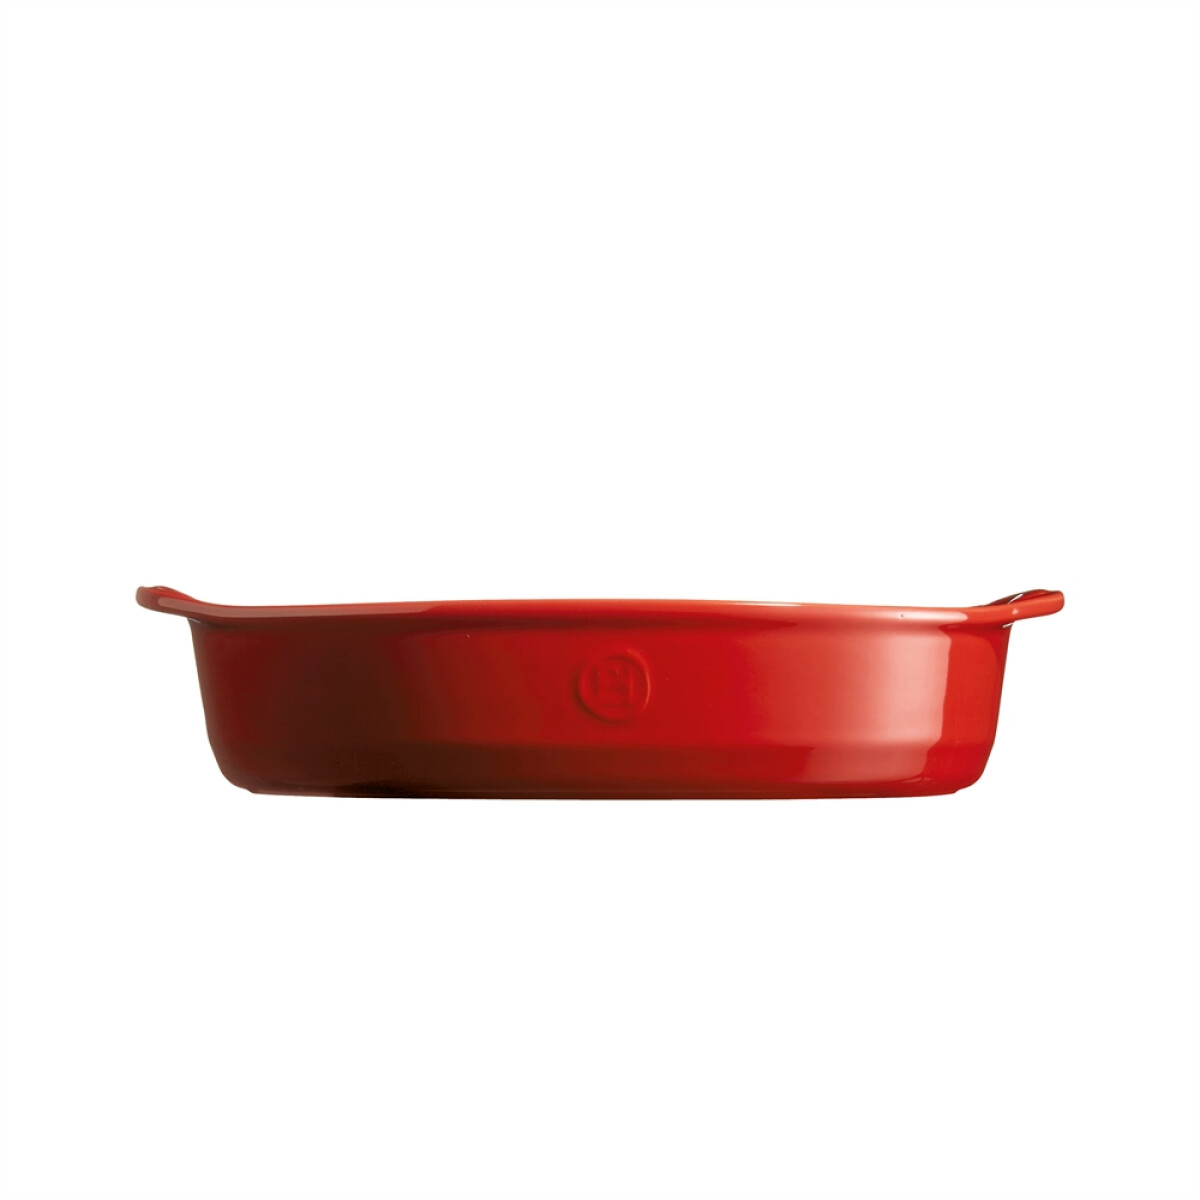 Керамична тава EMILE HENRY OVAL OVEN DISH - 35х22,5 см, цвят червен